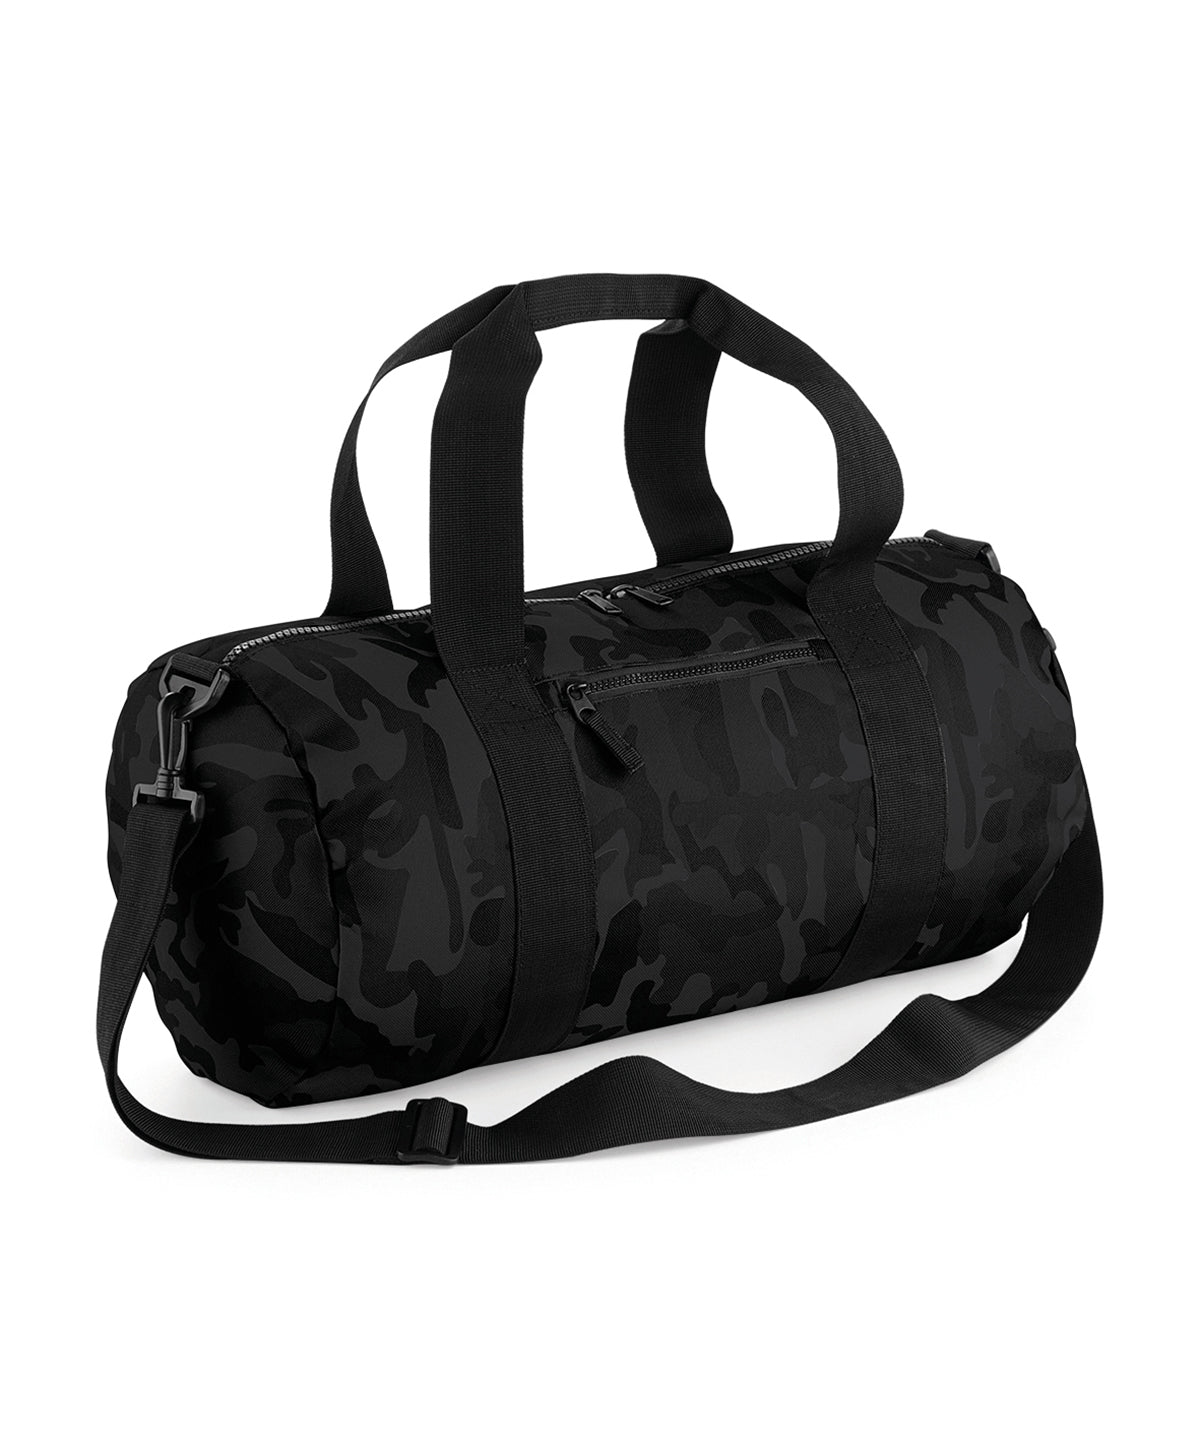 Personalised Bags - Black Bagbase Camo barrel bag